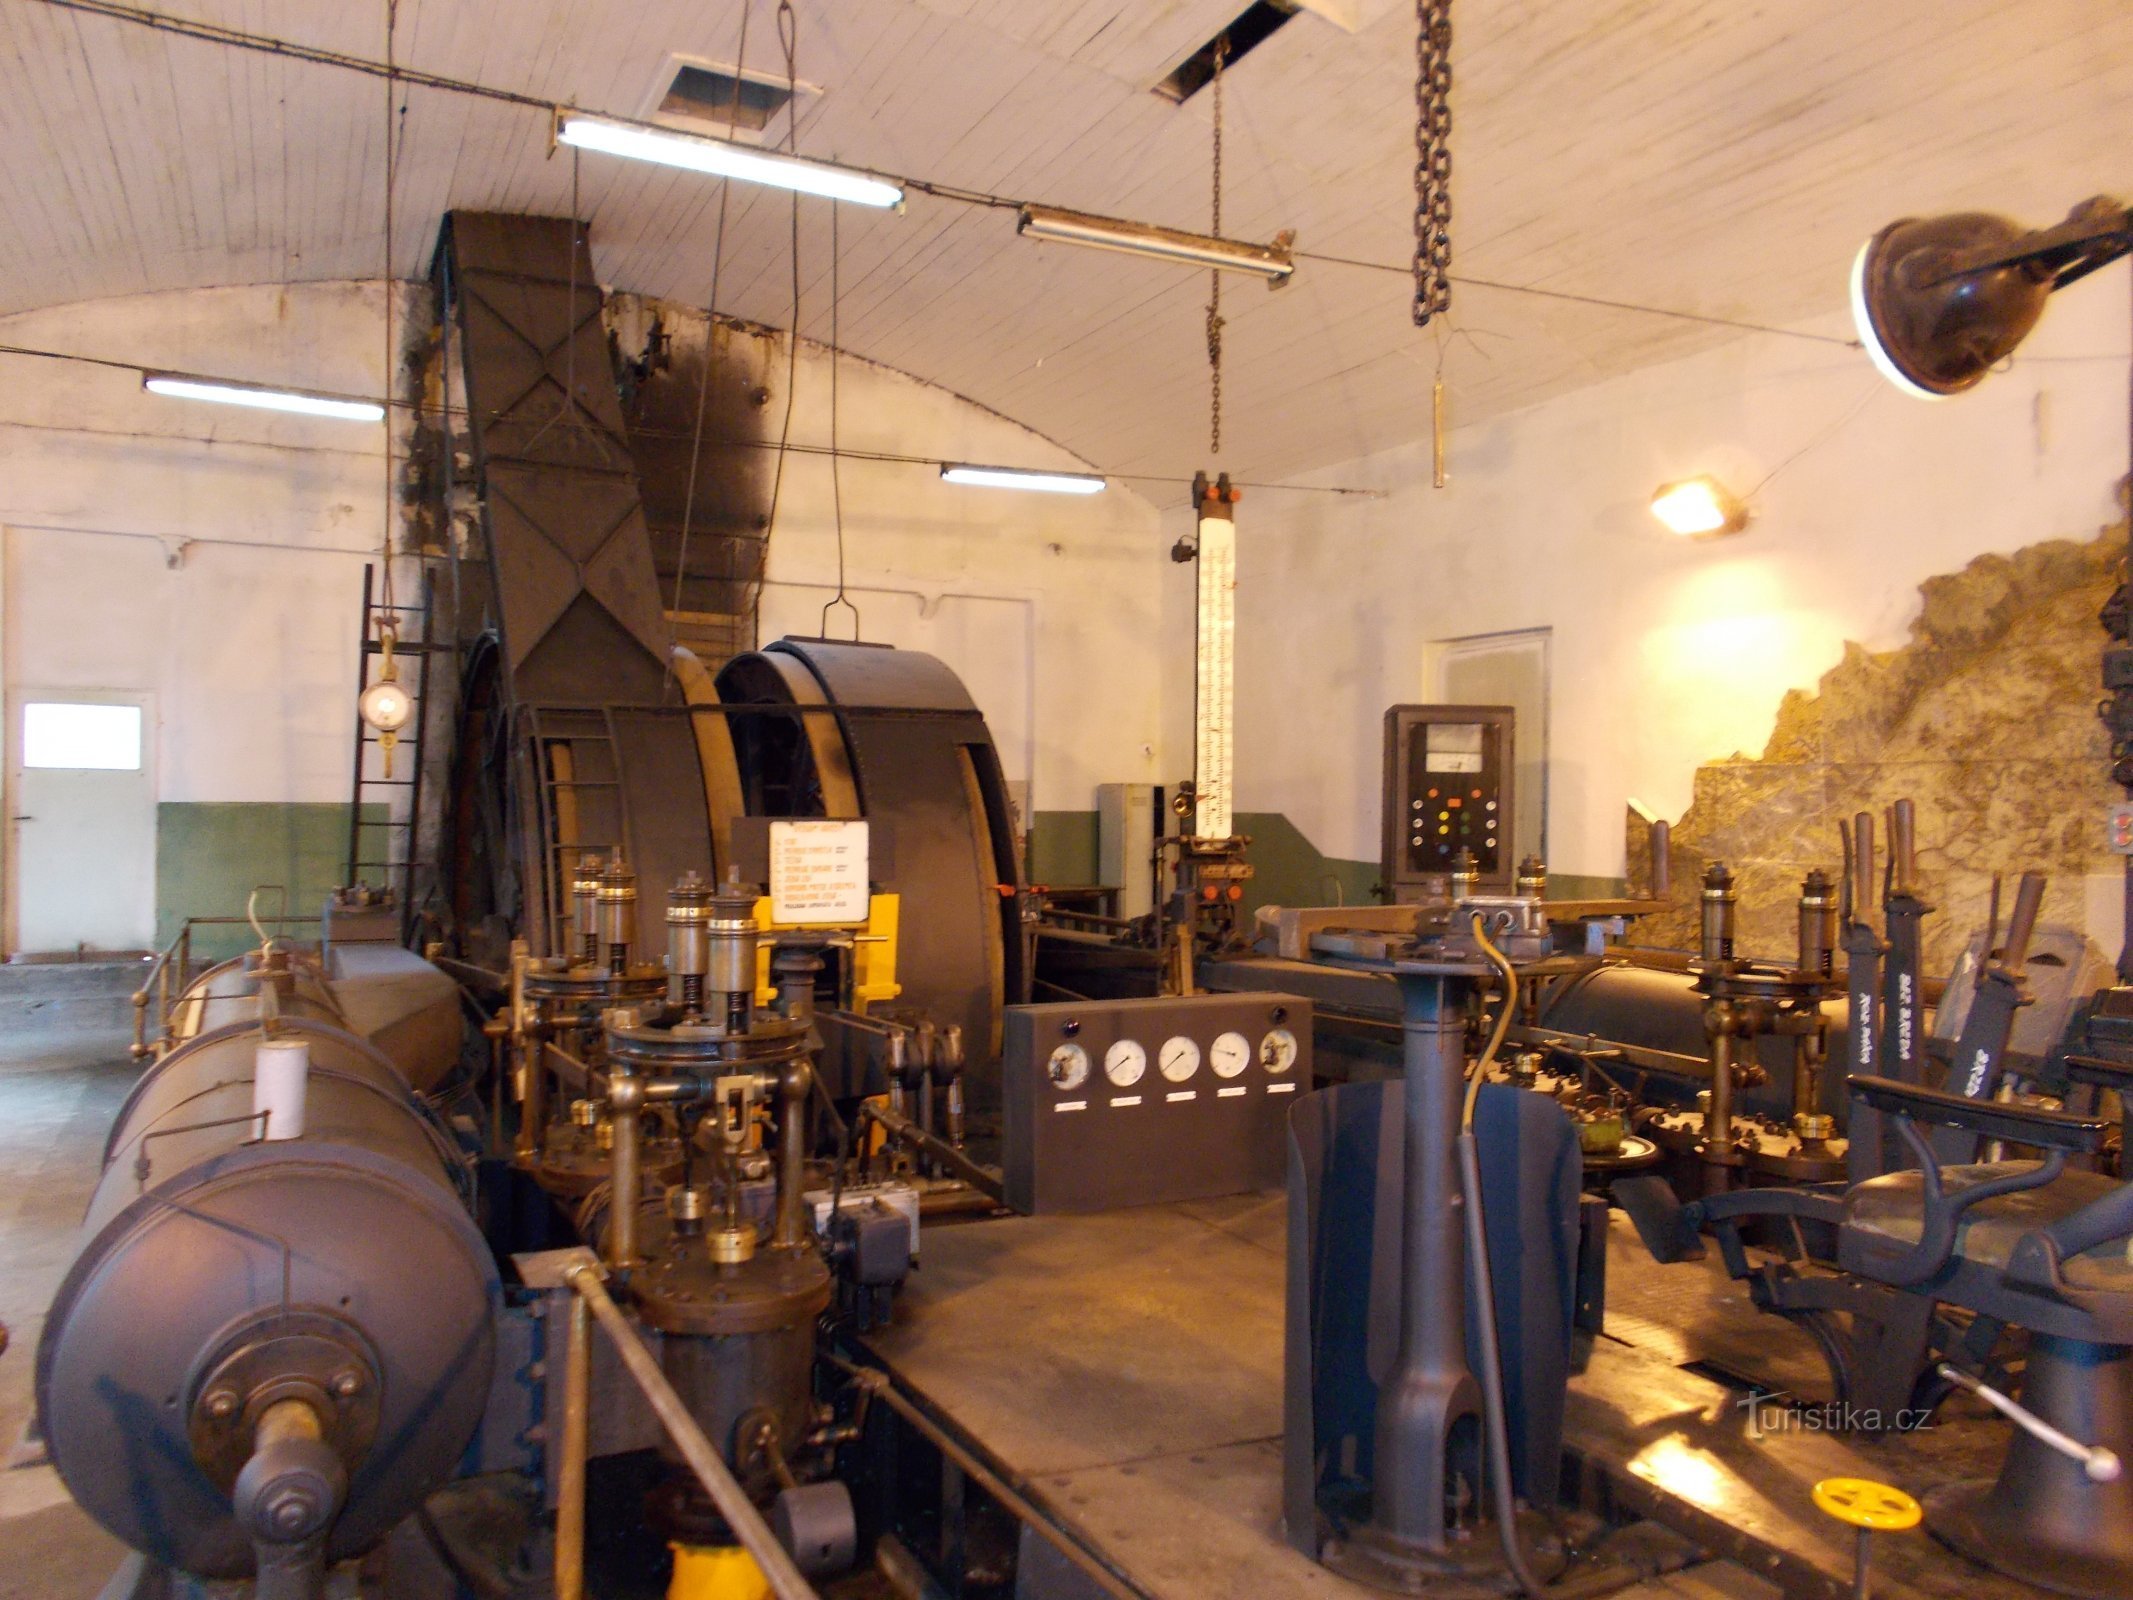 Tehnički muzej Podkrušnohorské - stroj za rudarenje parom